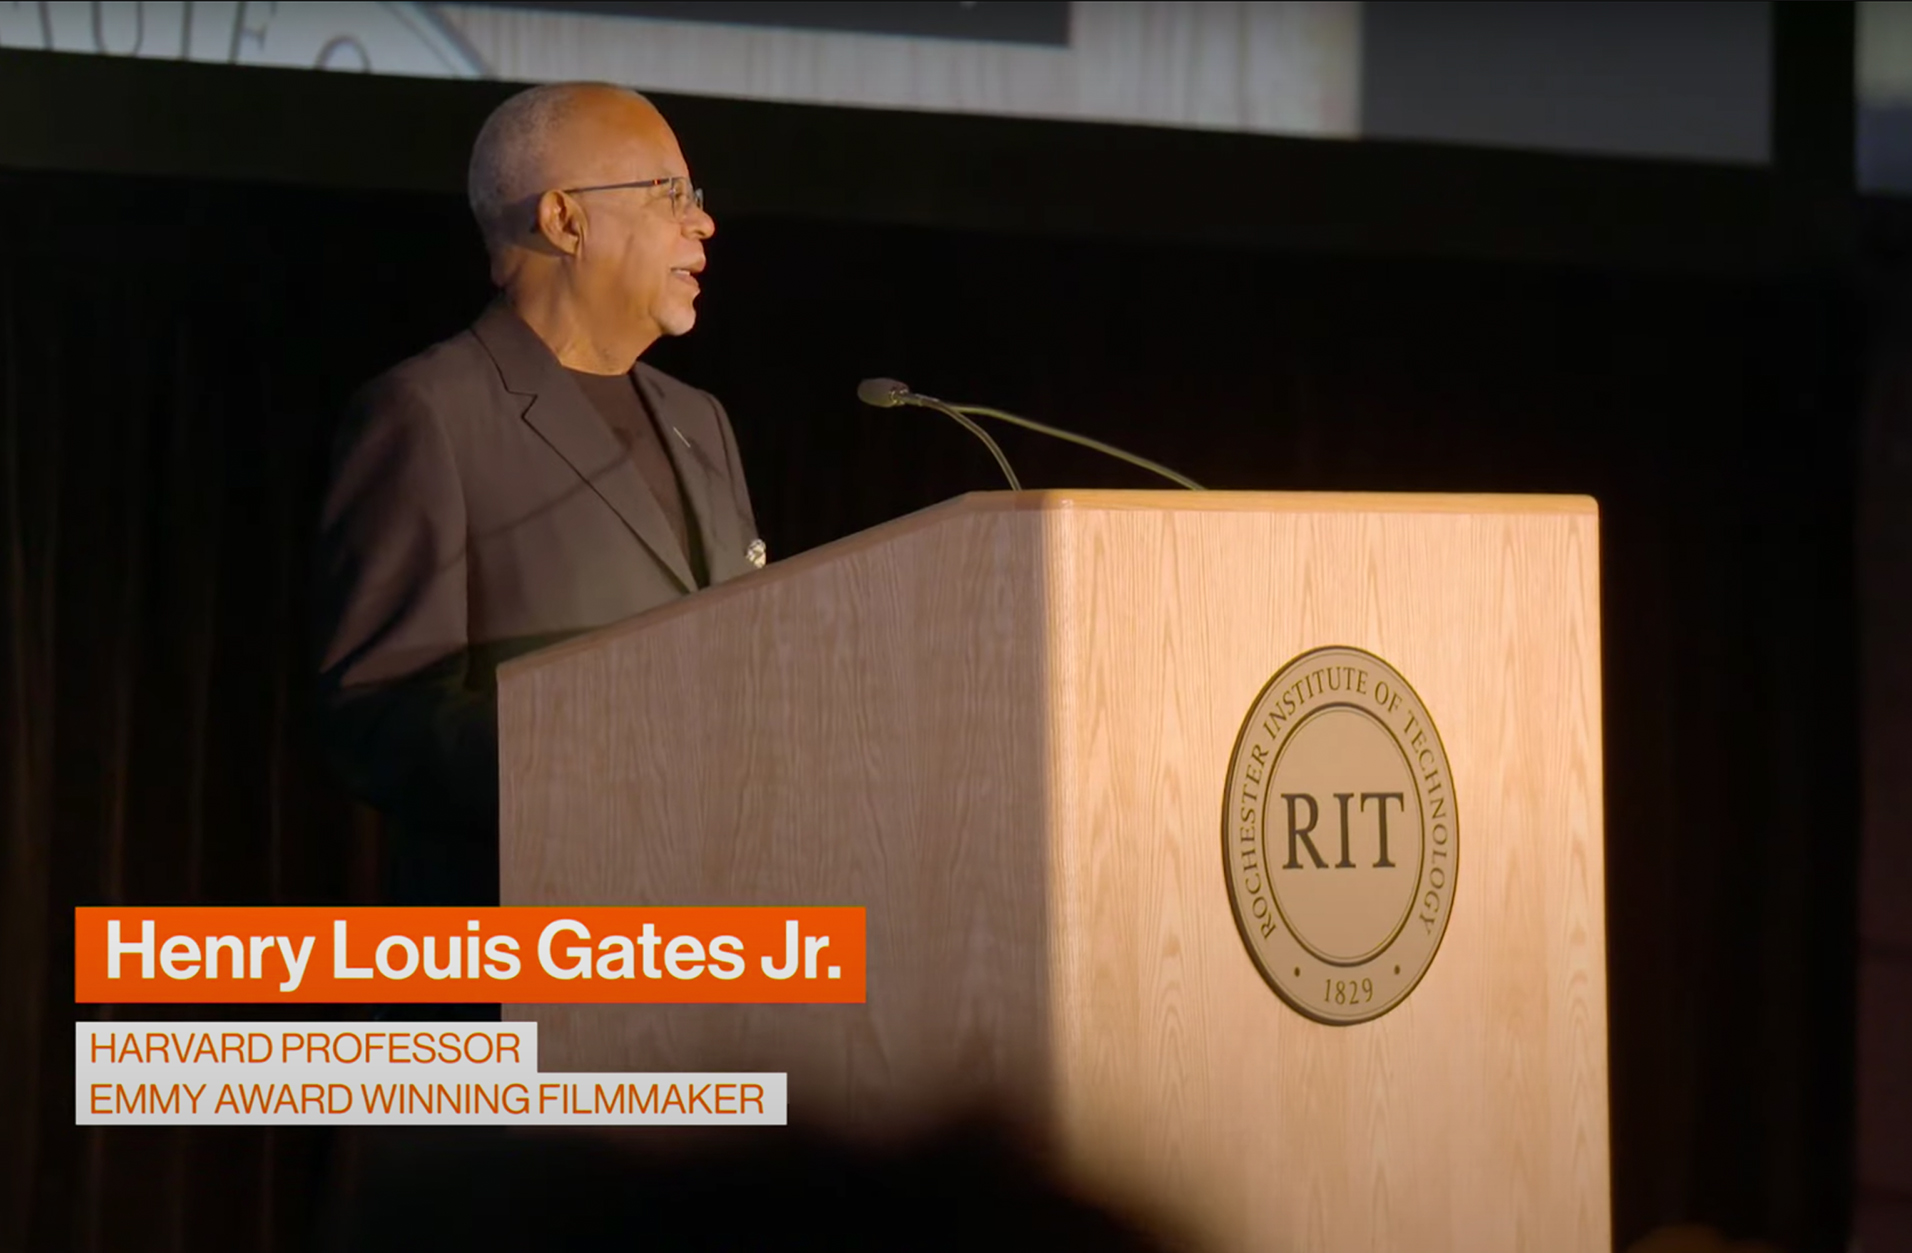 Dr. Henry Louis Gates at podium